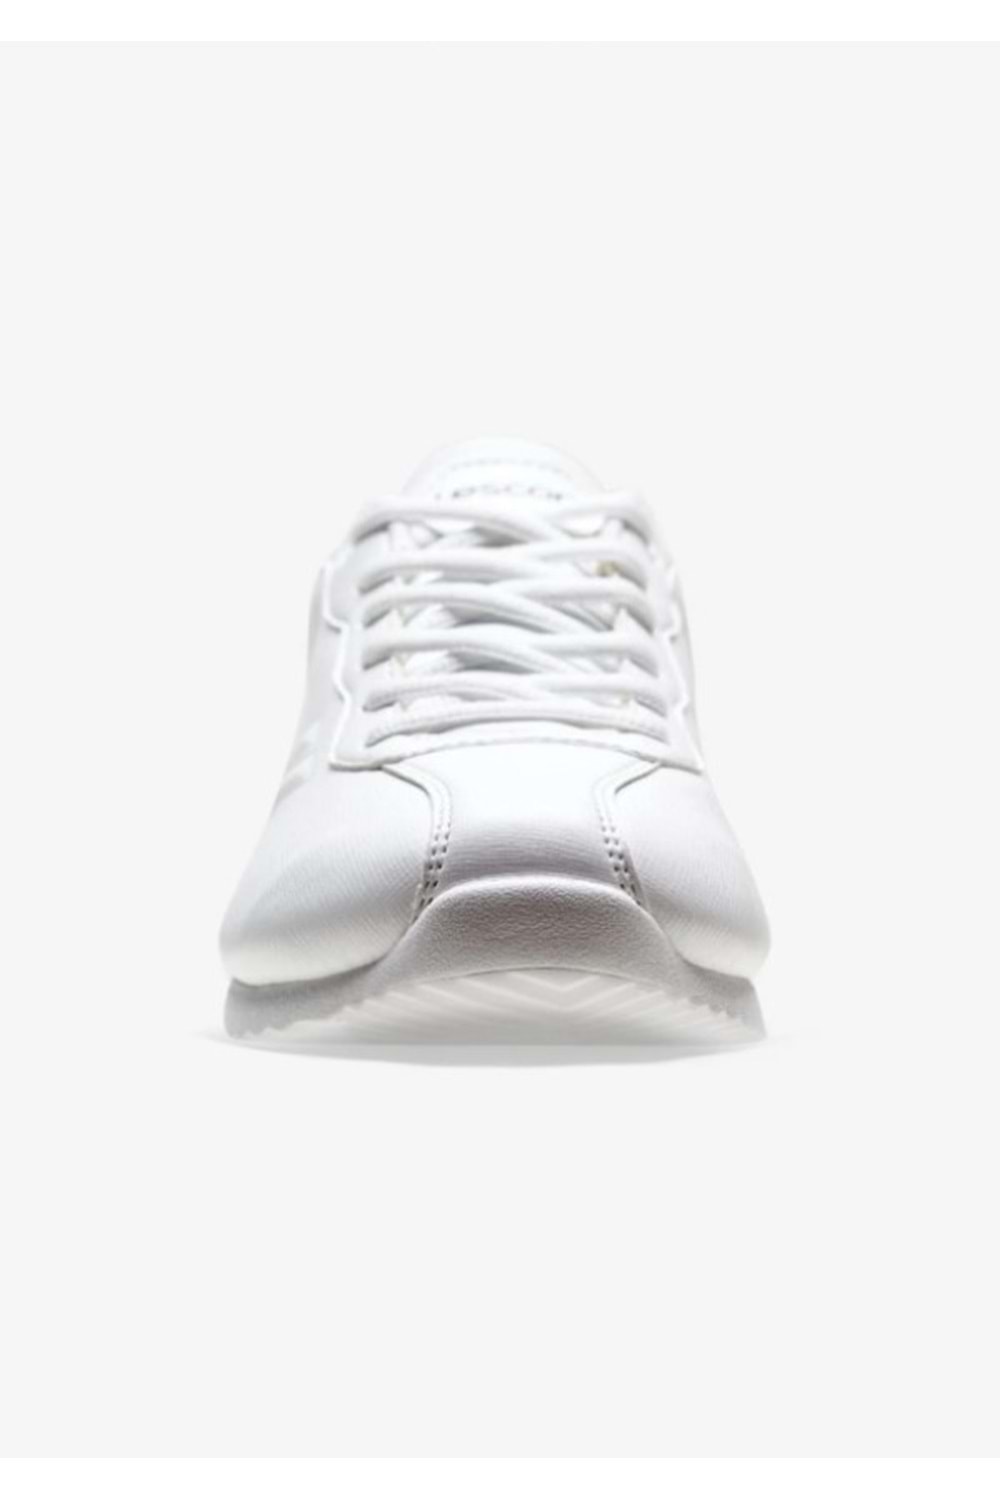 Lescon Neptun-4 Kadın Sneakers Spor Ayakkabı - Neptun-4 - Beyaz - ST01262-Beyaz-38